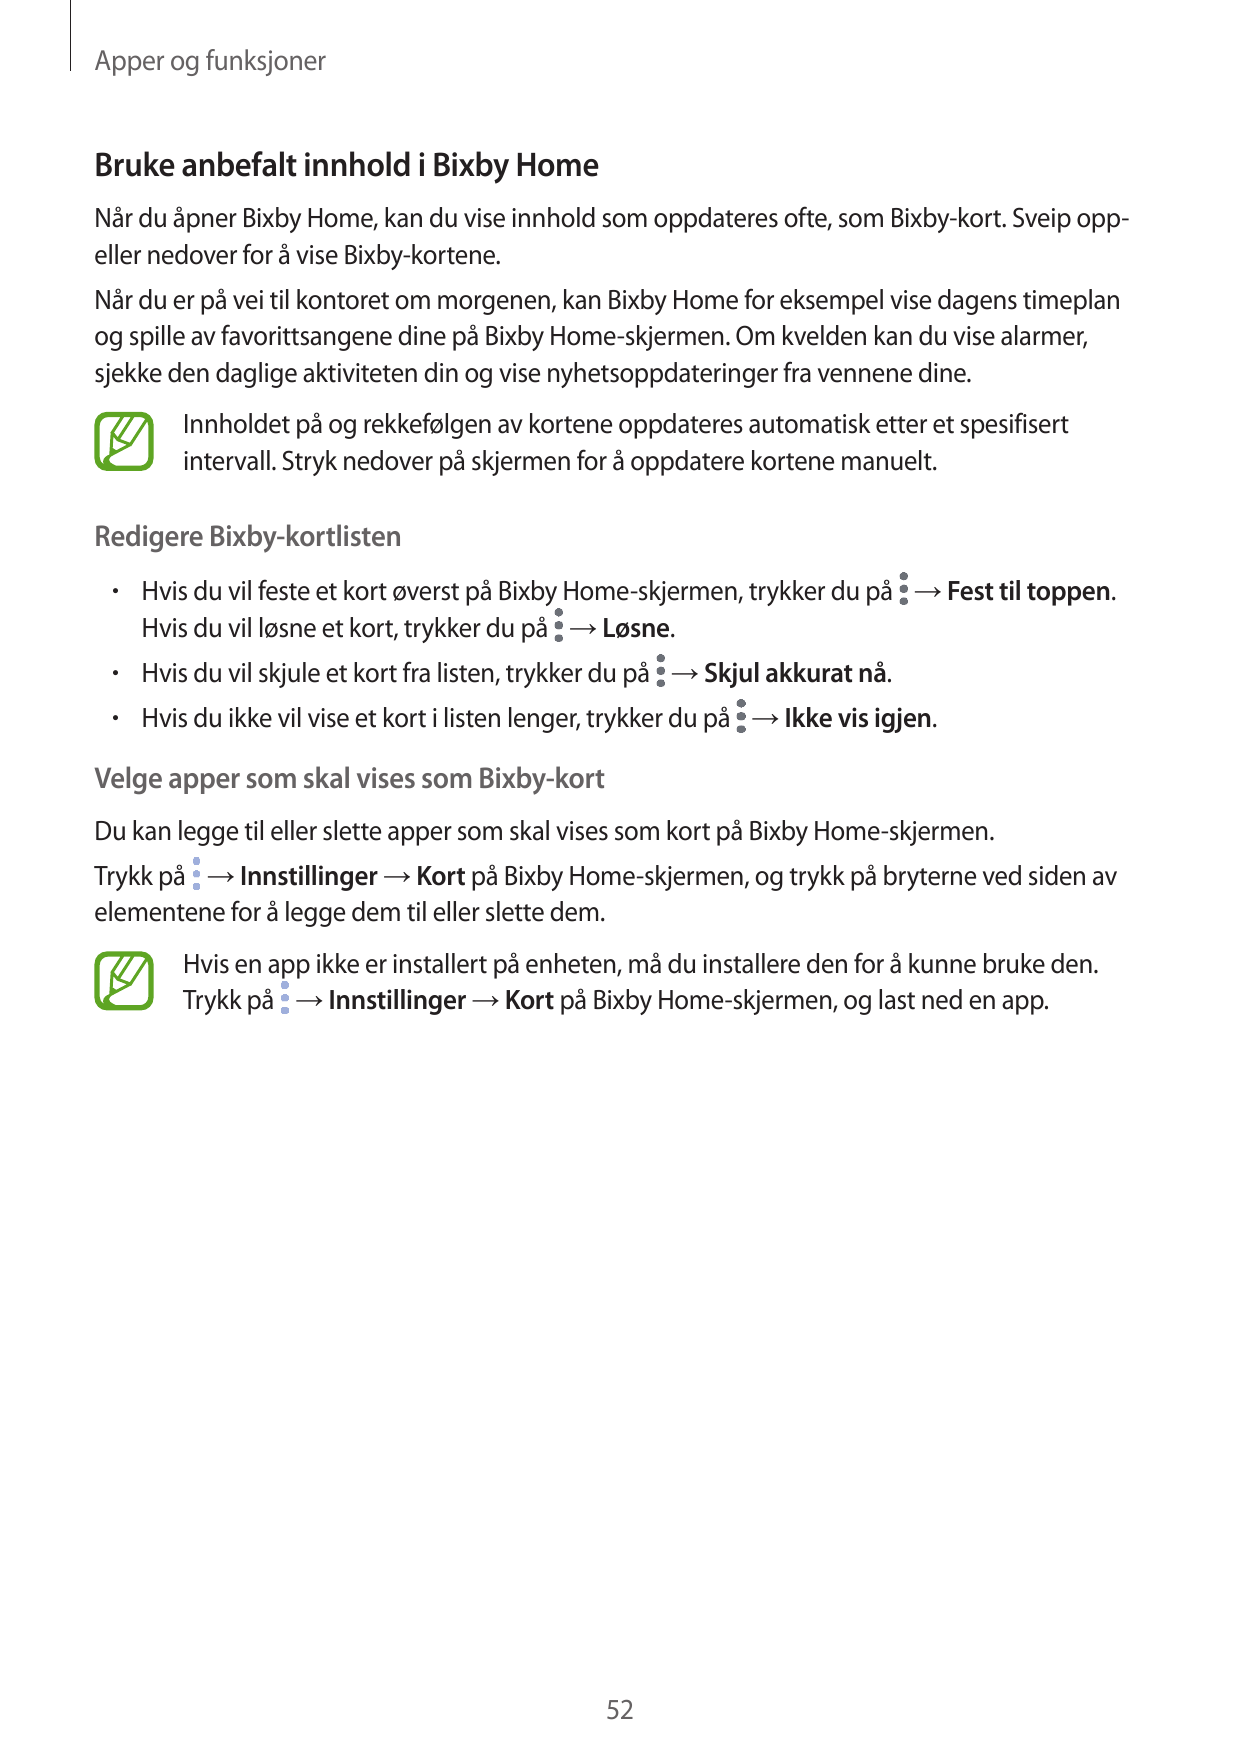 Apper og funksjonerBruke anbefalt innhold i Bixby HomeNår du åpner Bixby Home, kan du vise innhold som oppdateres ofte, som Bixb